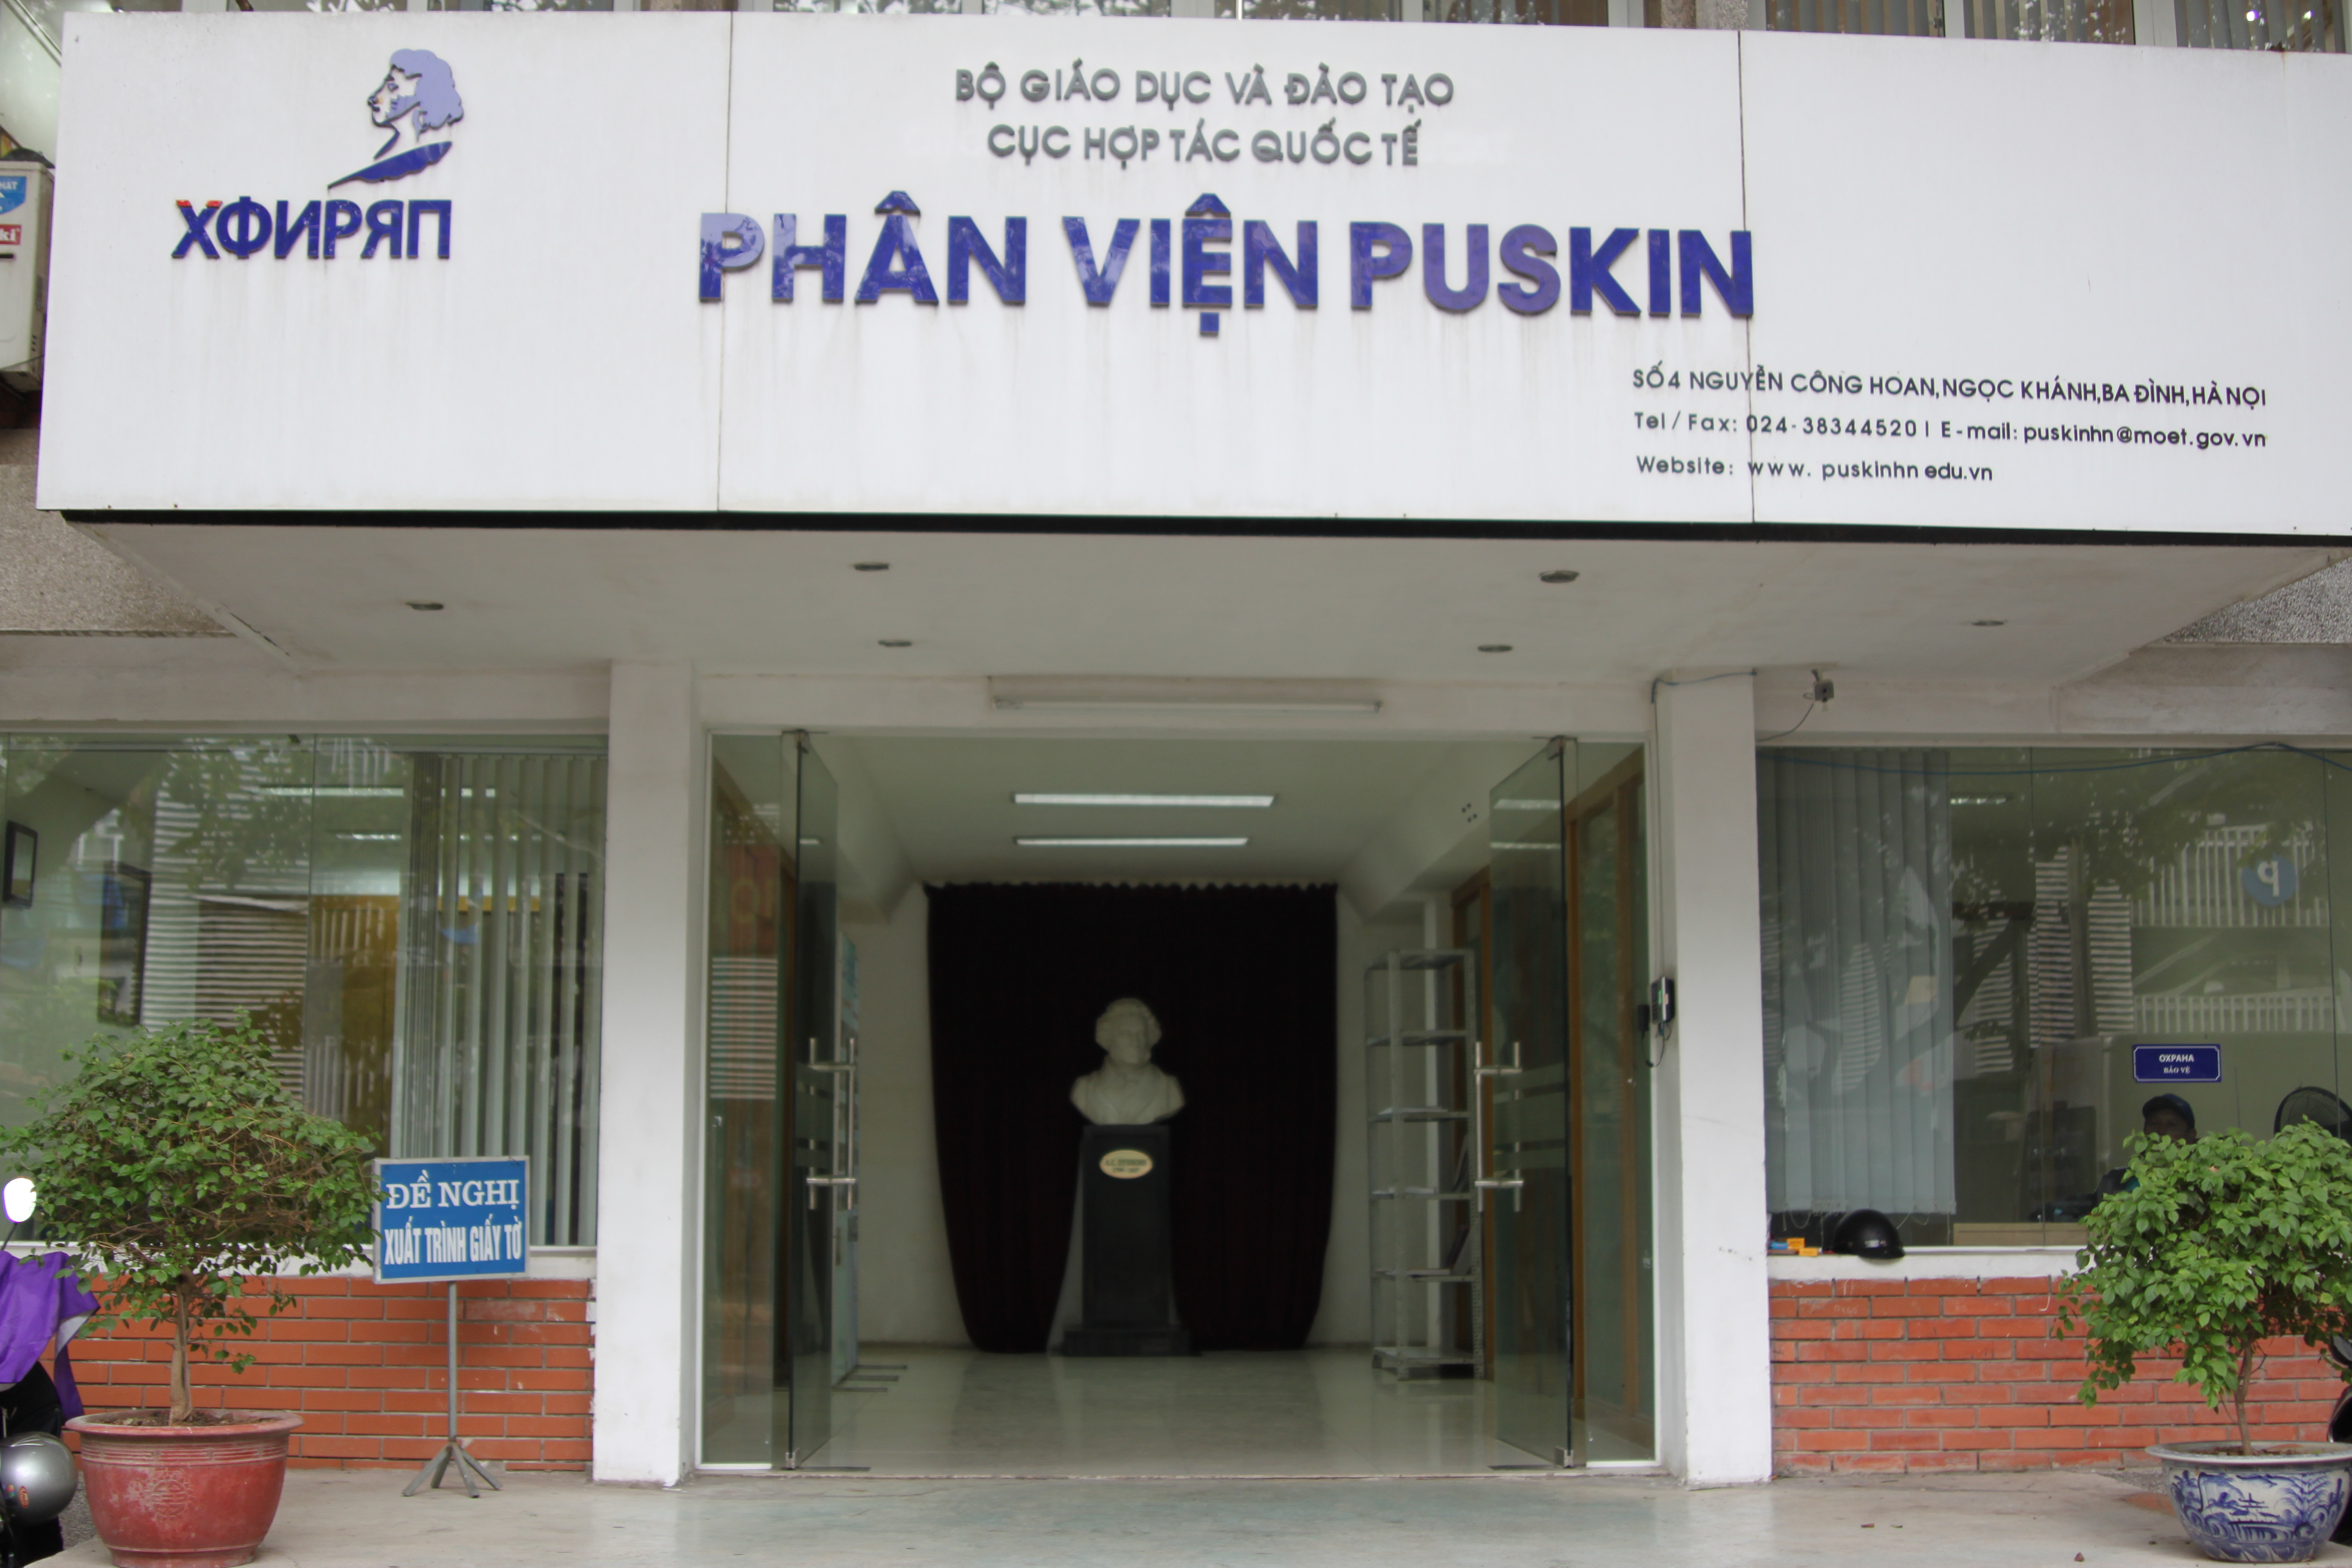 Проведение открытых уроков лингвистической направленности в образовательных организациях Республики Вьетнам